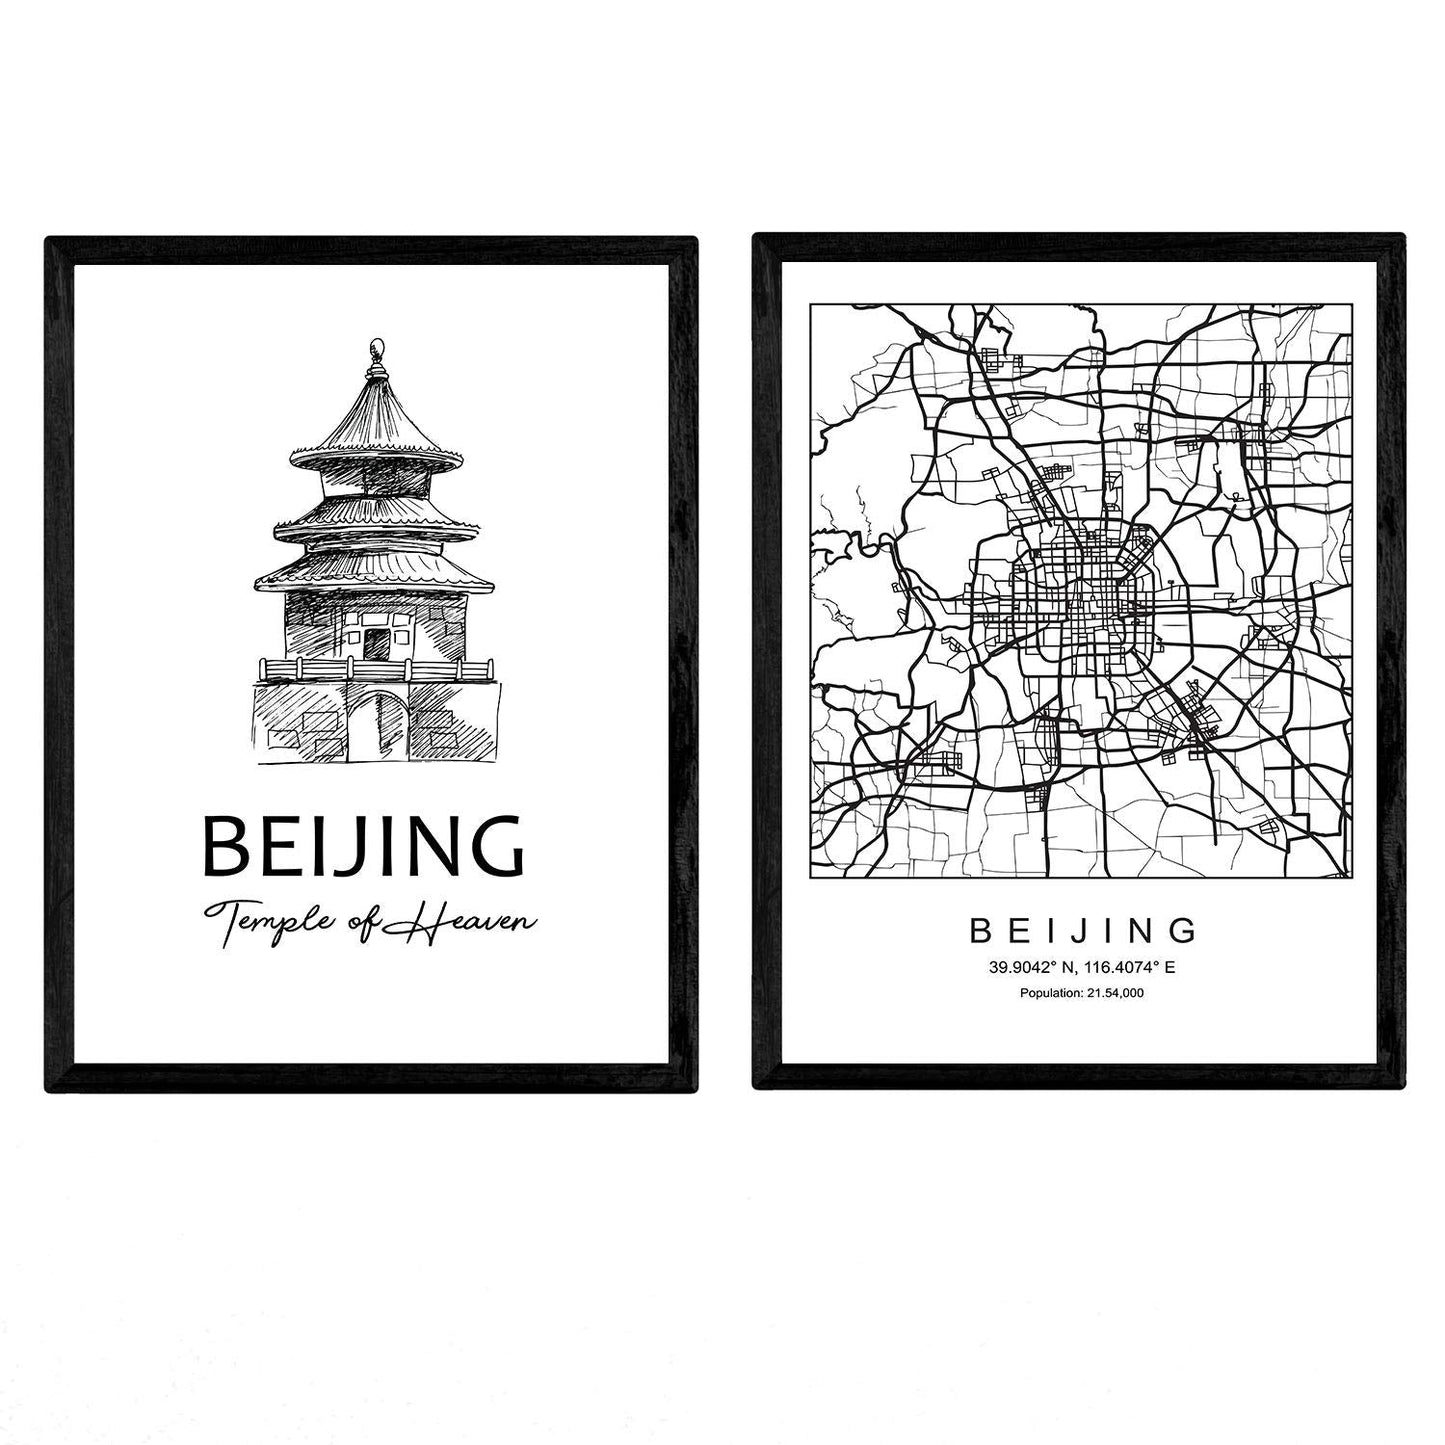 Pack de posters de Beijing - Templo del cielo. Láminas con monumentos de ciudades.-Artwork-Nacnic-Nacnic Estudio SL